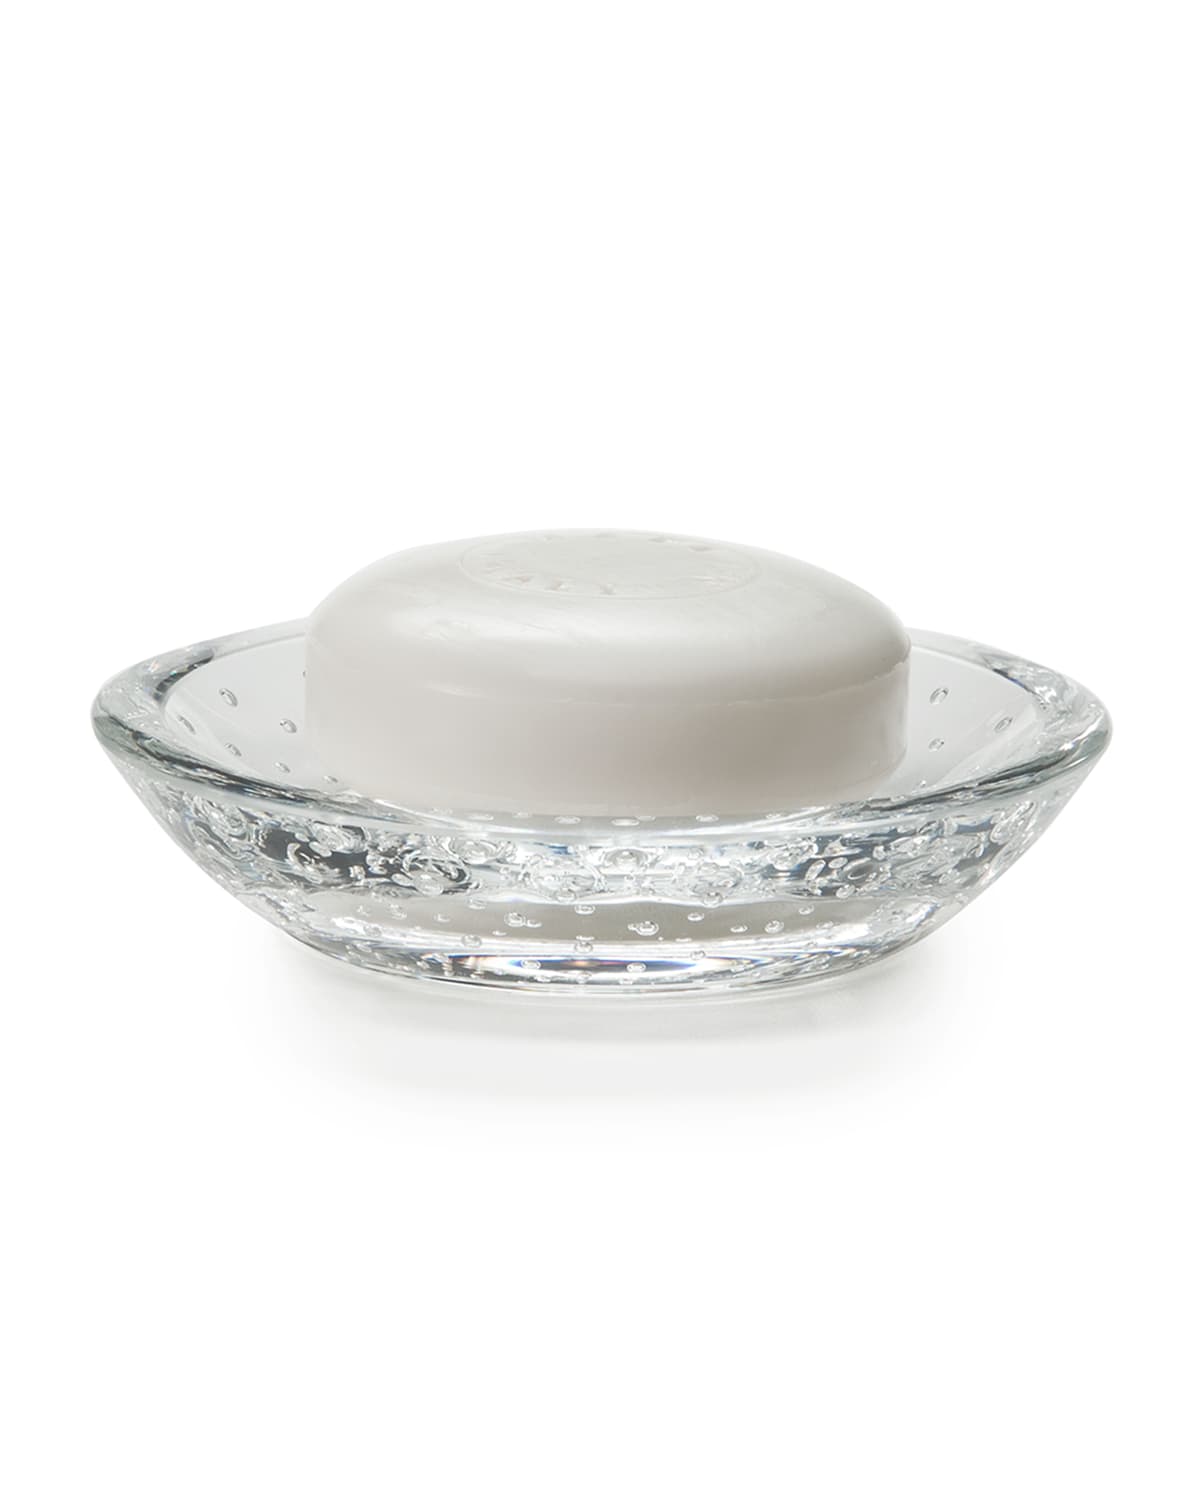 Labrazel Celeste Soap Dish In White